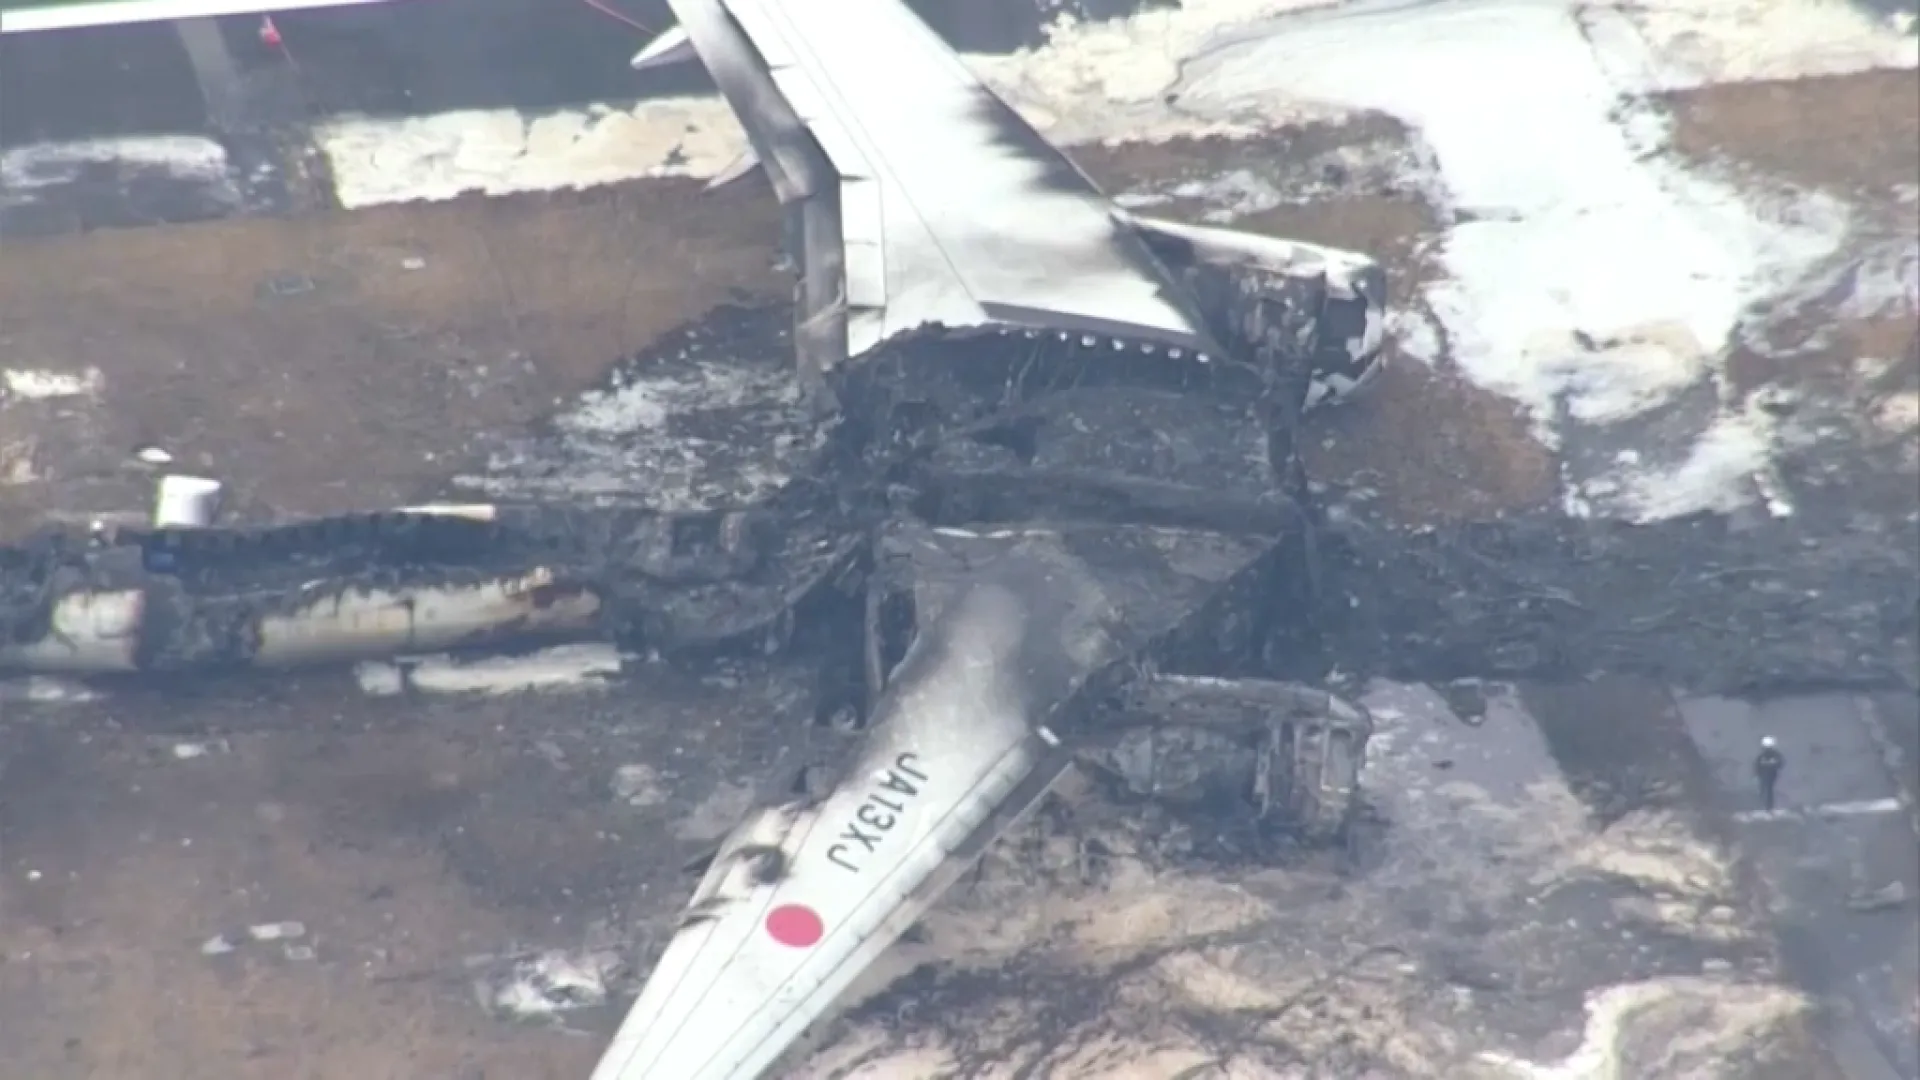 L’avió de la guàrdia costanera japonesa envestit a l’aeroport de Tòquio no tenia permís per enlairar-se ni per ser a la pista